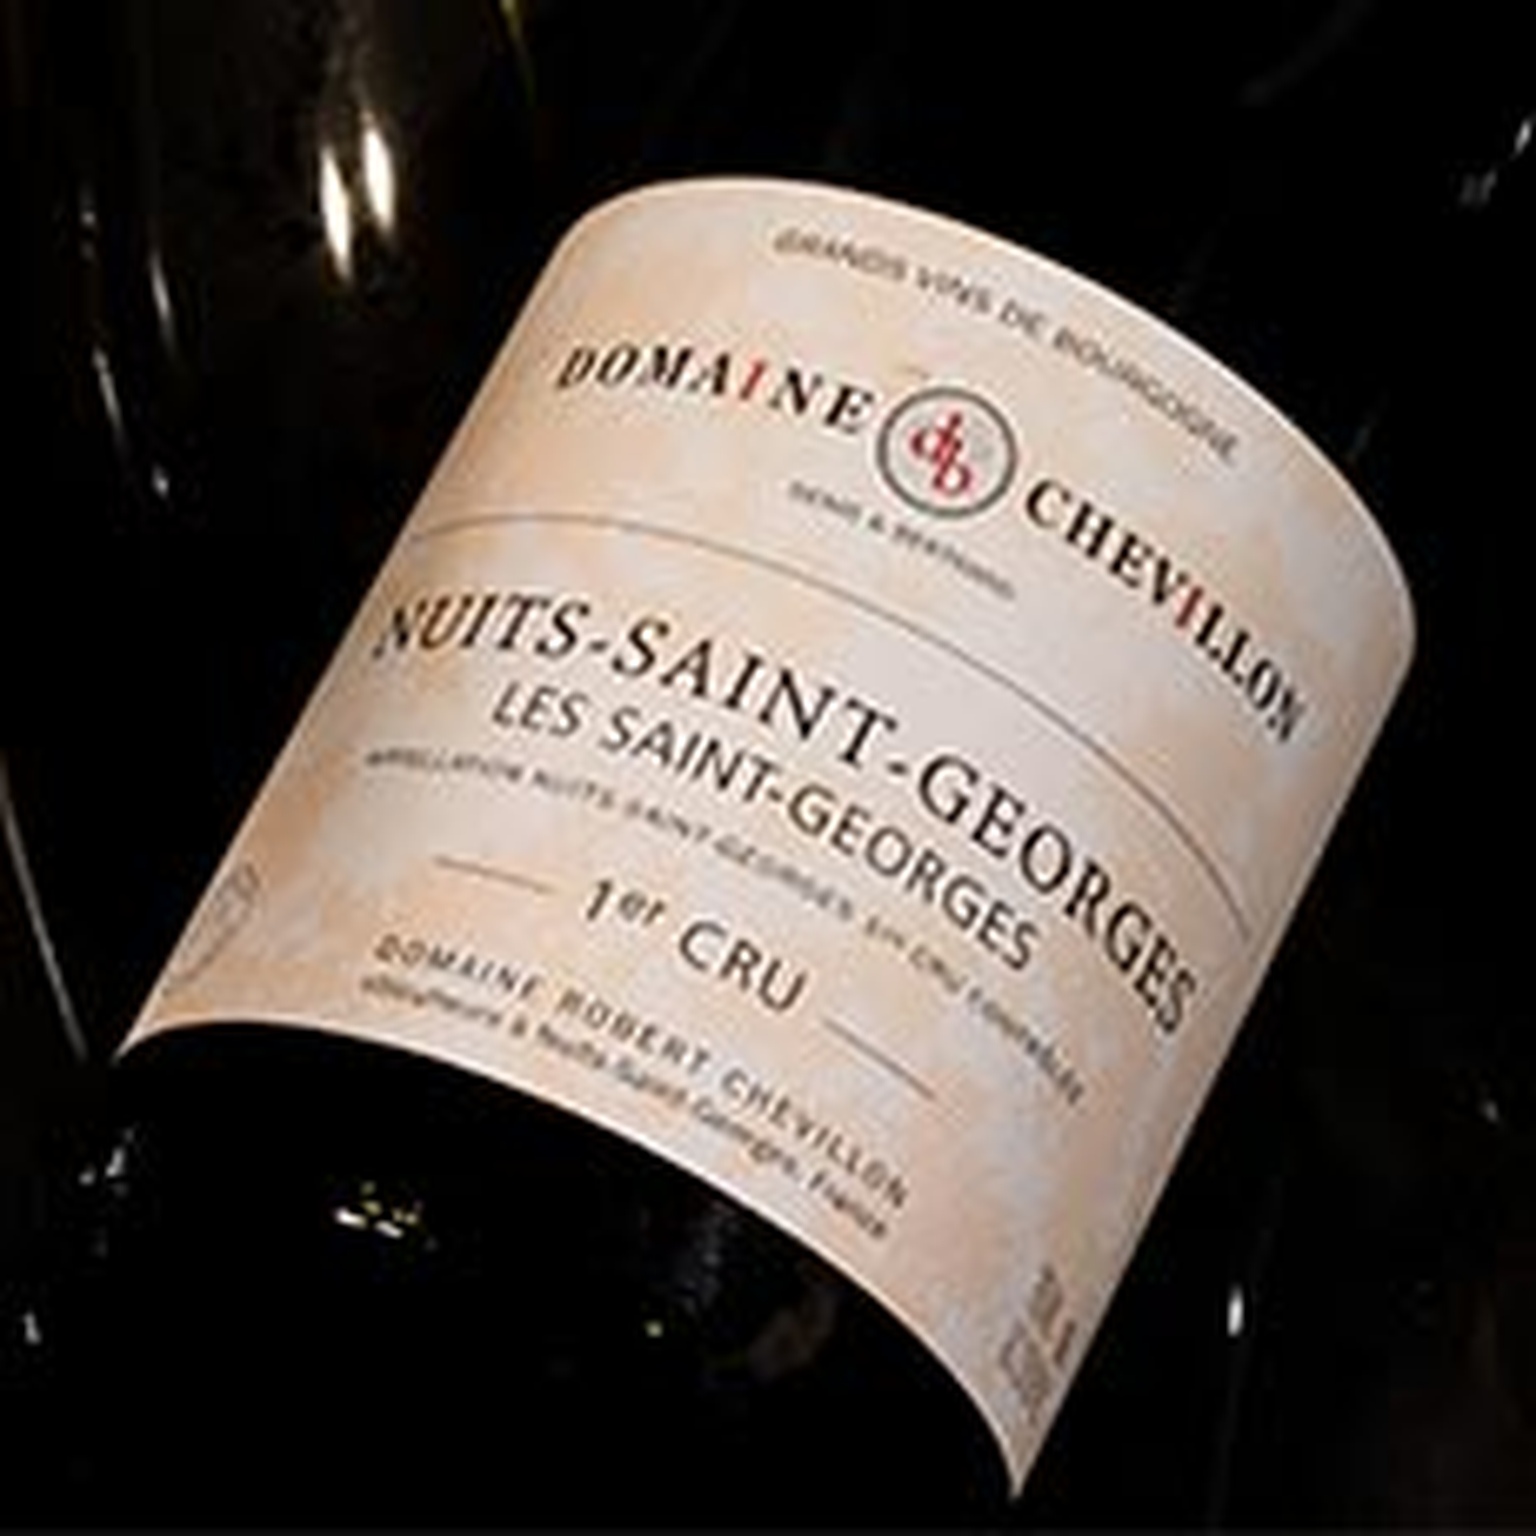 2011 Nuits Saint Georges, Les Saint Georges, Robert Chevillon, 6 bottles of 75cl (IN BOND: …